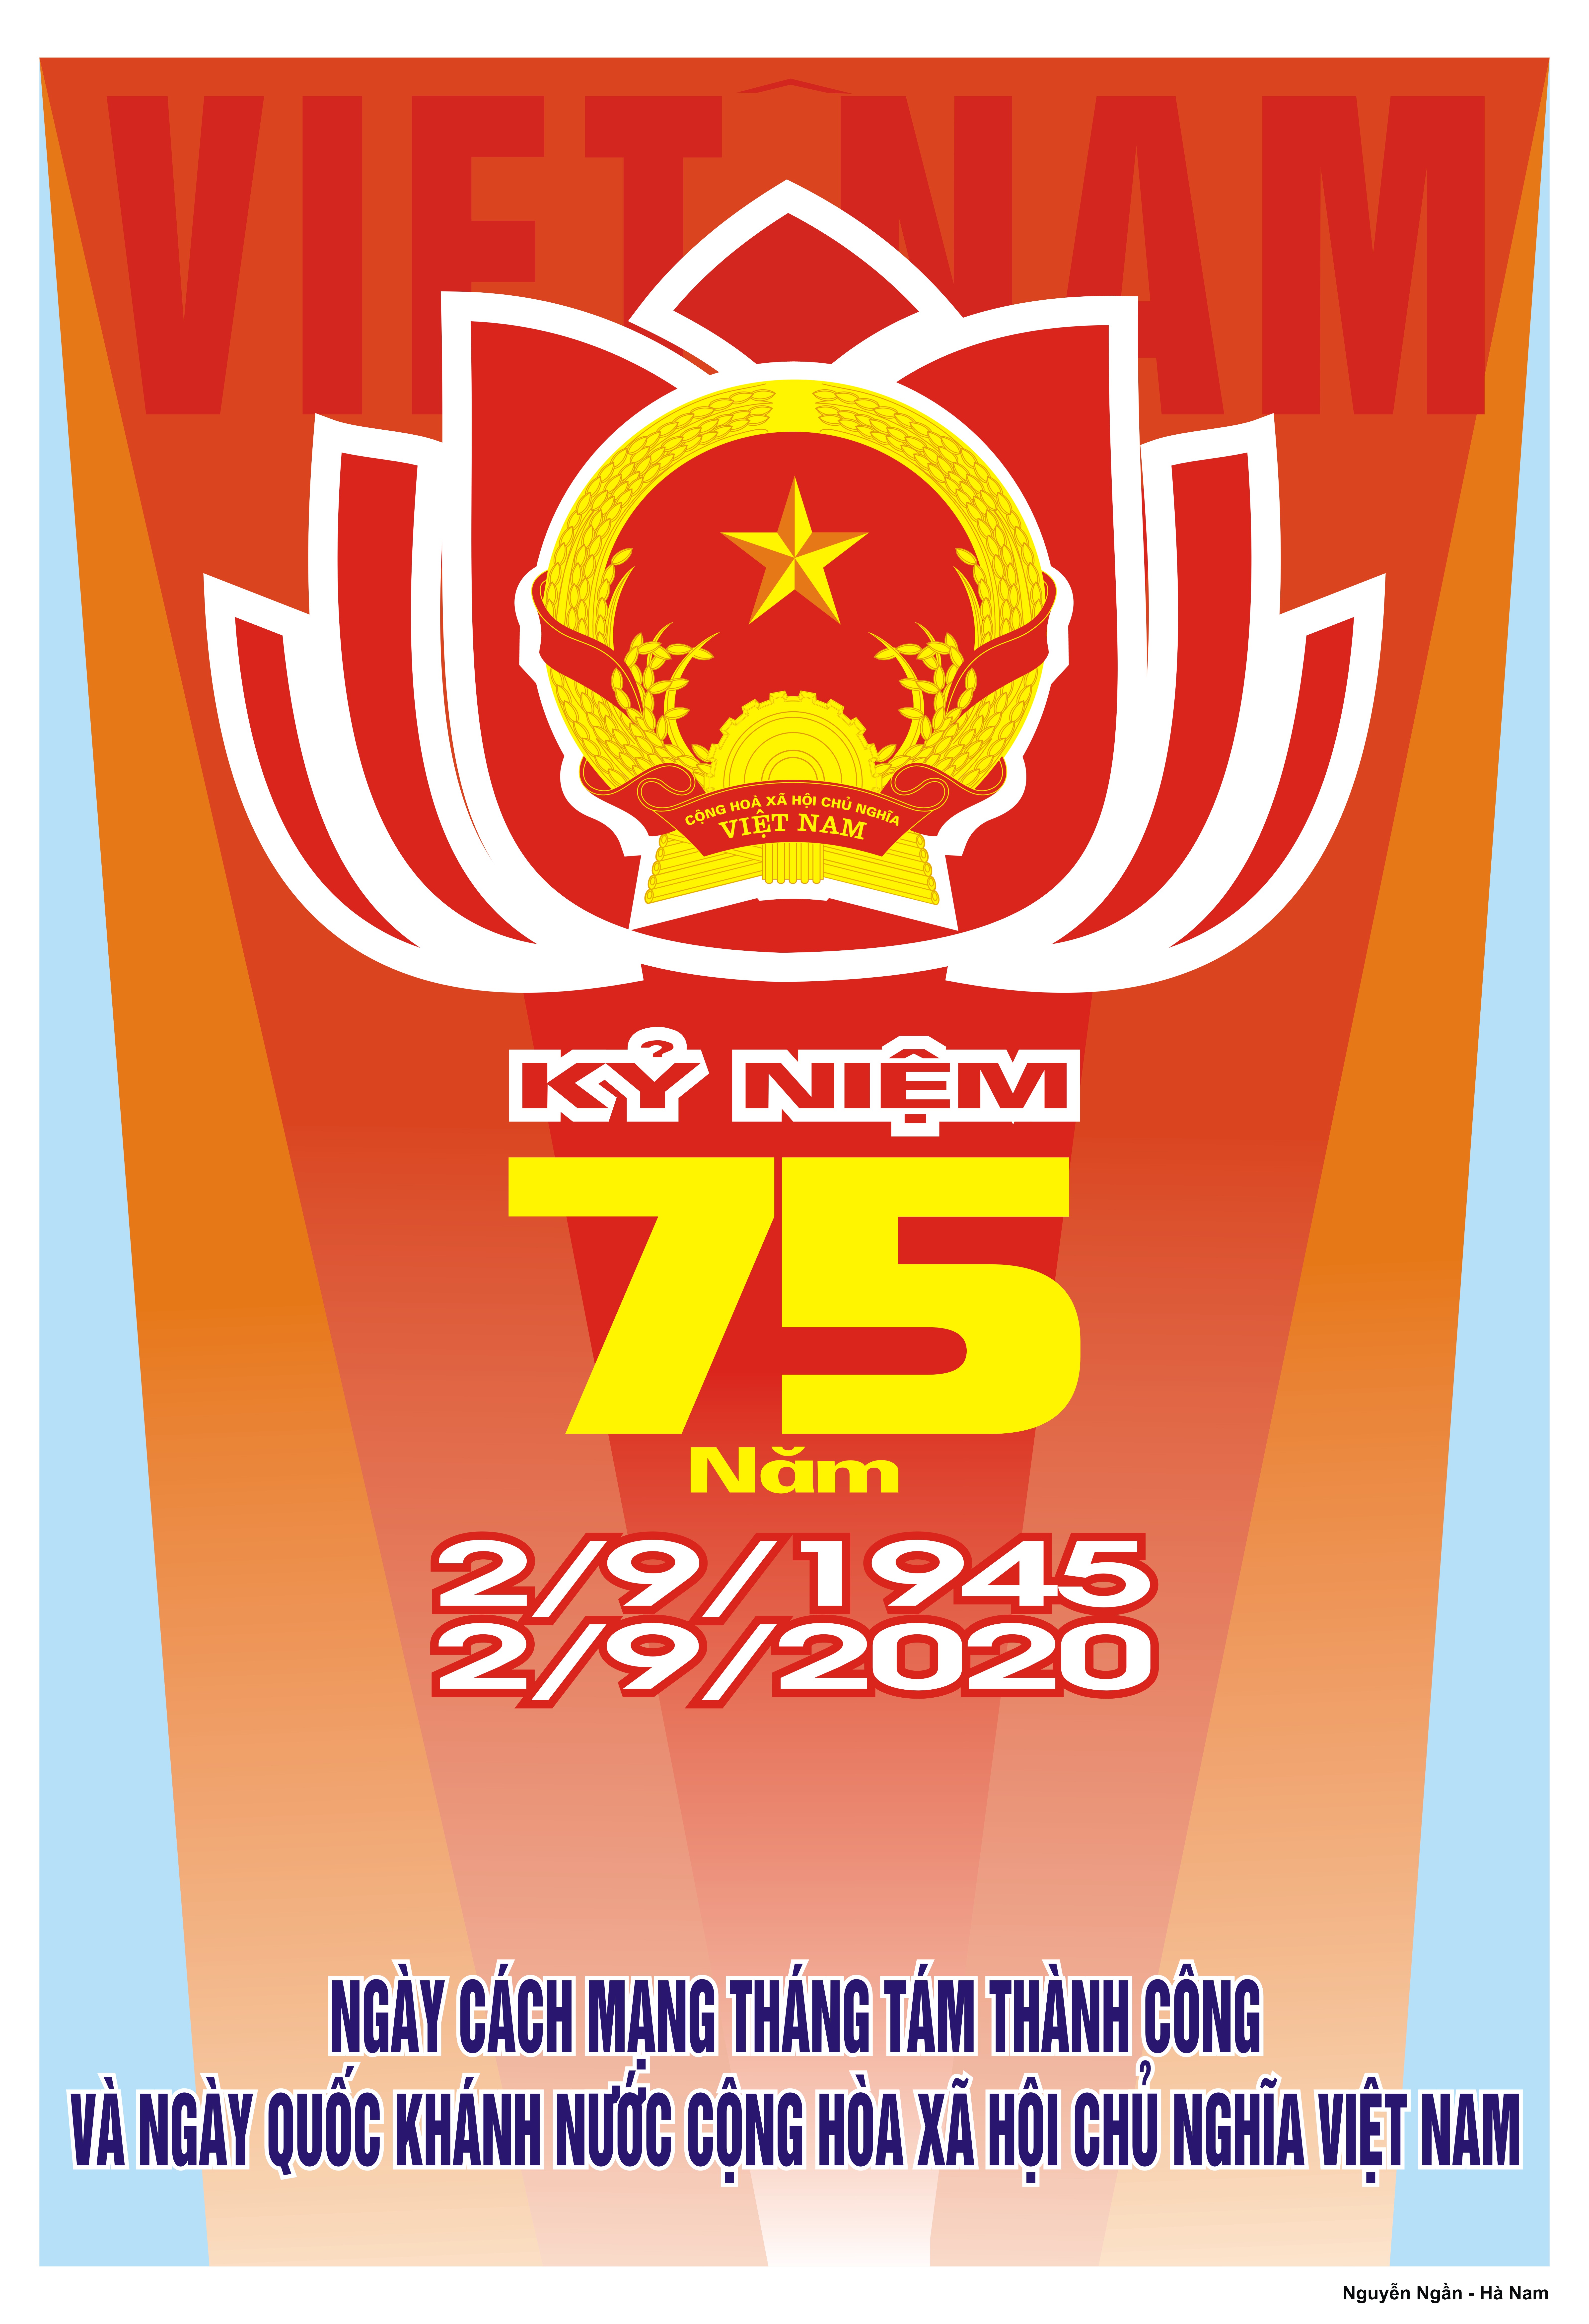 Image: Kỷ niệm 75 năm ngày Cách mạng Tháng Tám thành công (19/8/1945 - 19/8/2020) và Quốc khánh nước Cộng hòa Xã hội Chủ nghĩa Việt Nam (02/9/1945 - 02/9/2020)